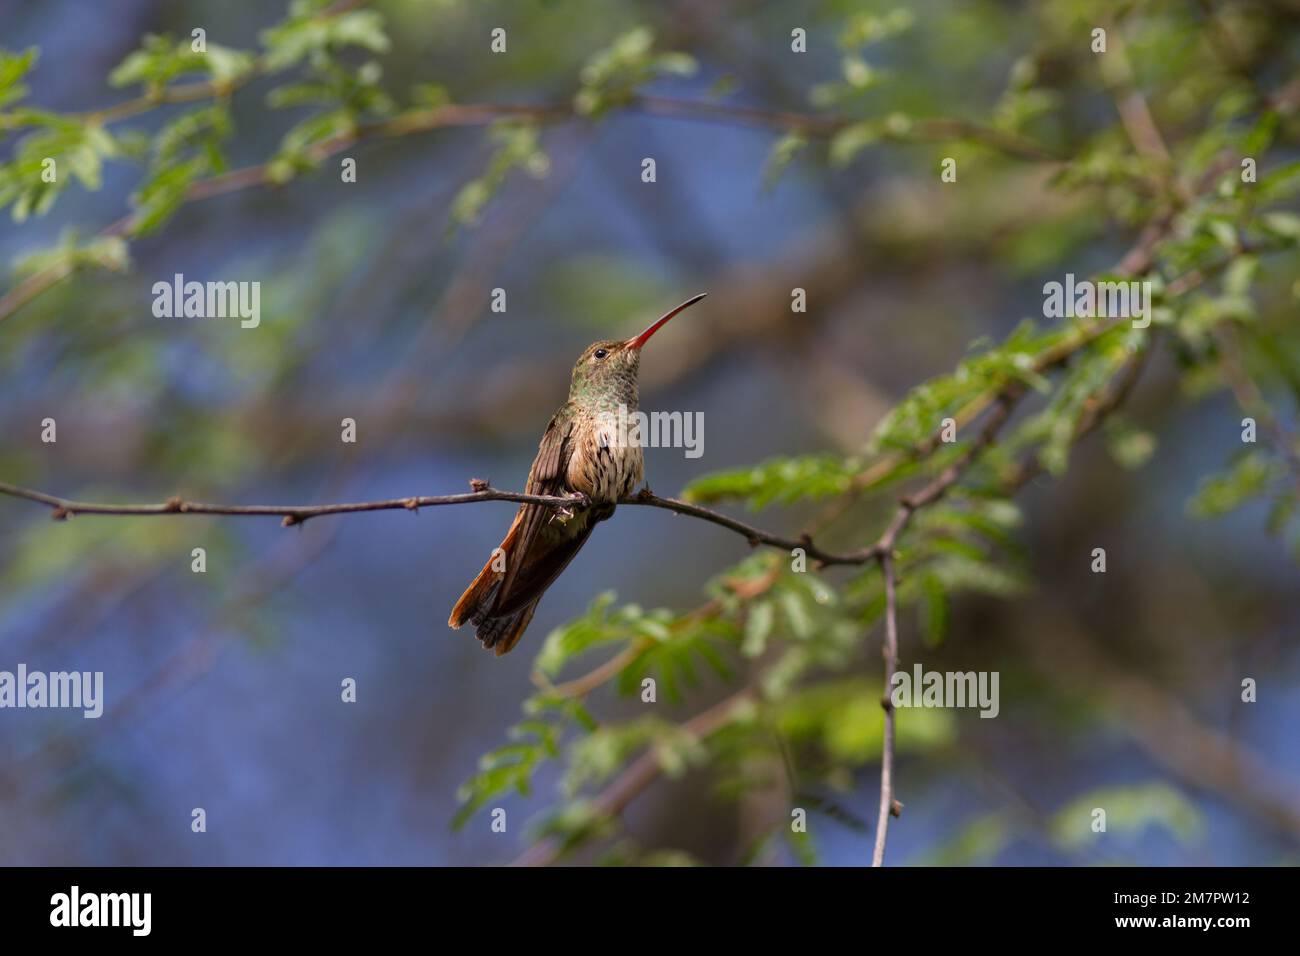 Buff-Bauch-Kolibri posiert für mich in einem Baum im Süden von Texas. Dieser kleine Kolibri wird selten gesehen, da er schüchtern und schwer zu erkennen ist. Stockfoto